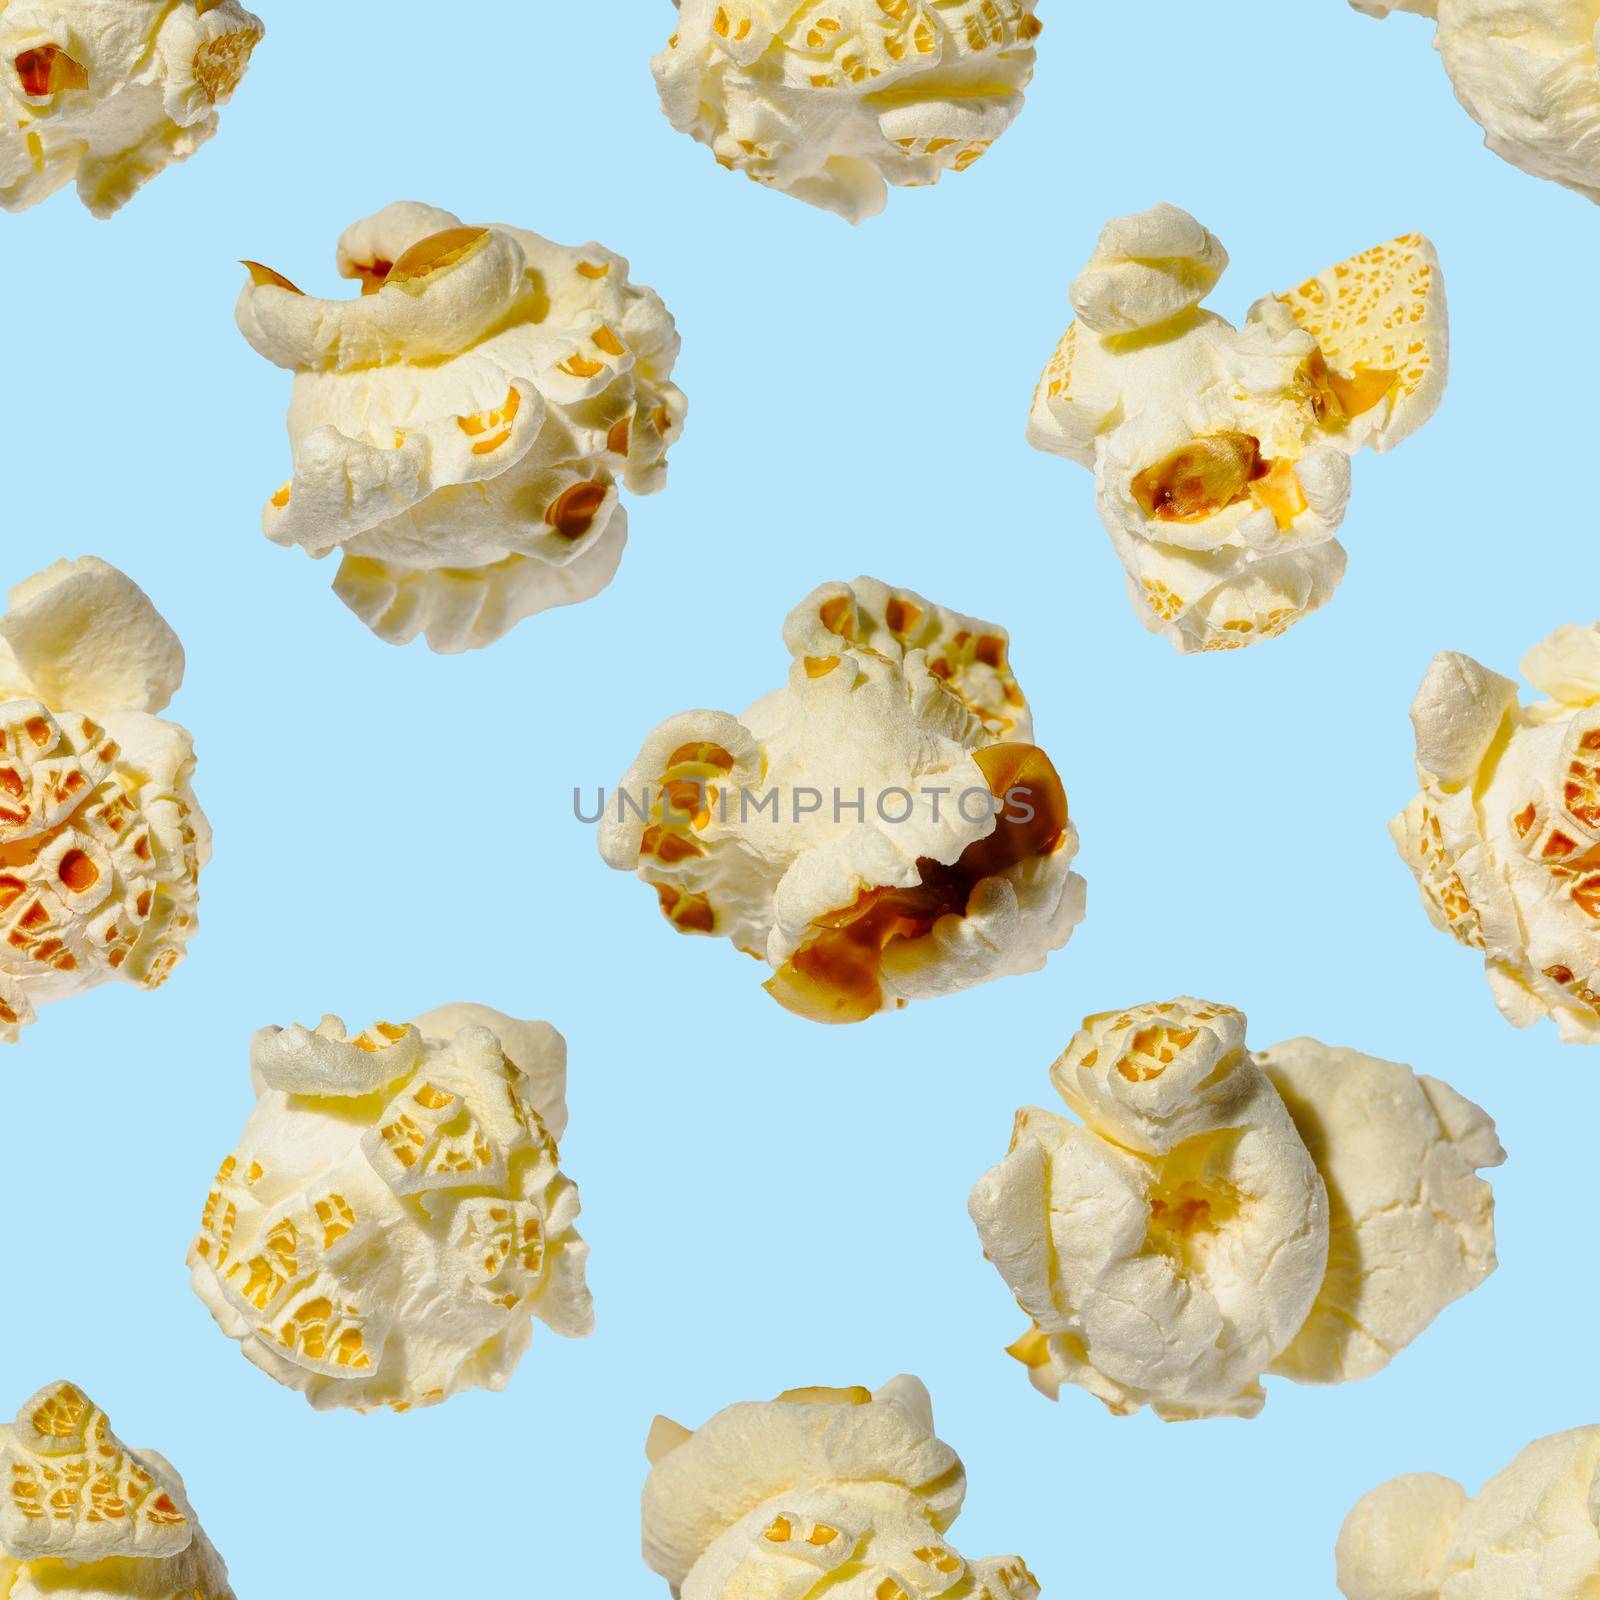 seamless pattern - popcorn. popcorn on a blue background, pattern by PhotoTime